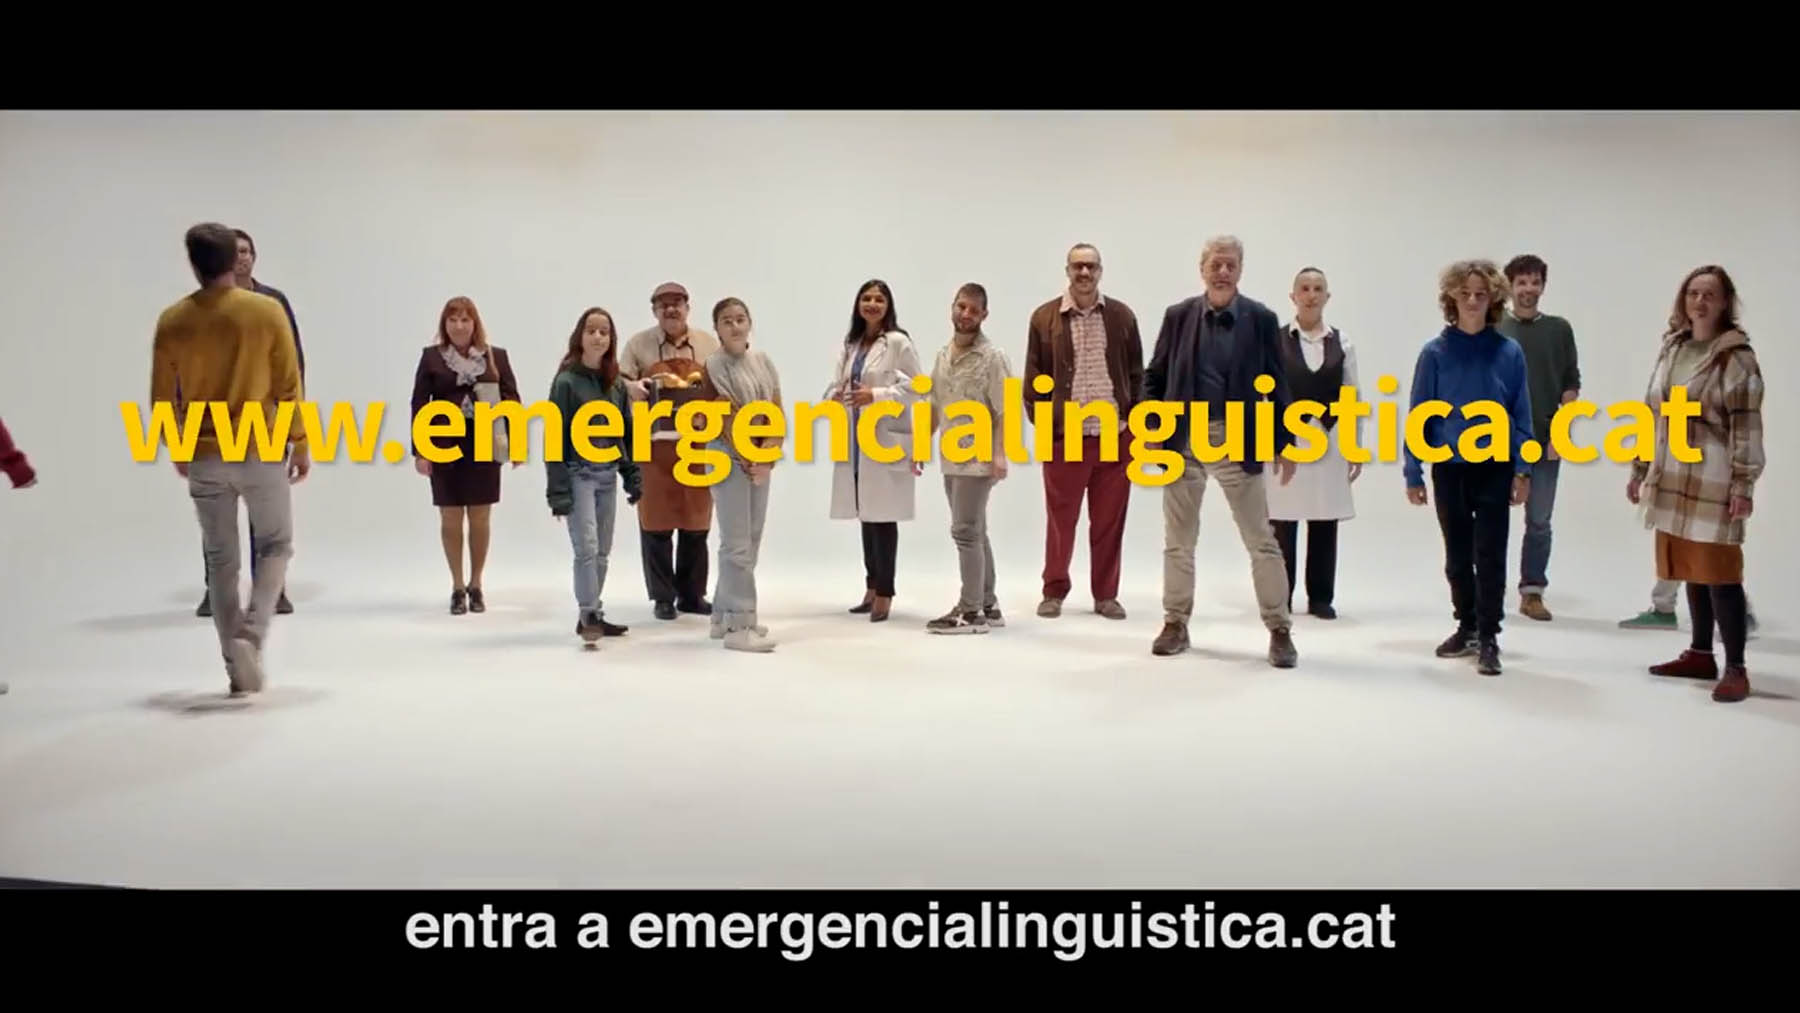 Un detalle del anuncio que promociona el catalán en la televisión pública valenciana.